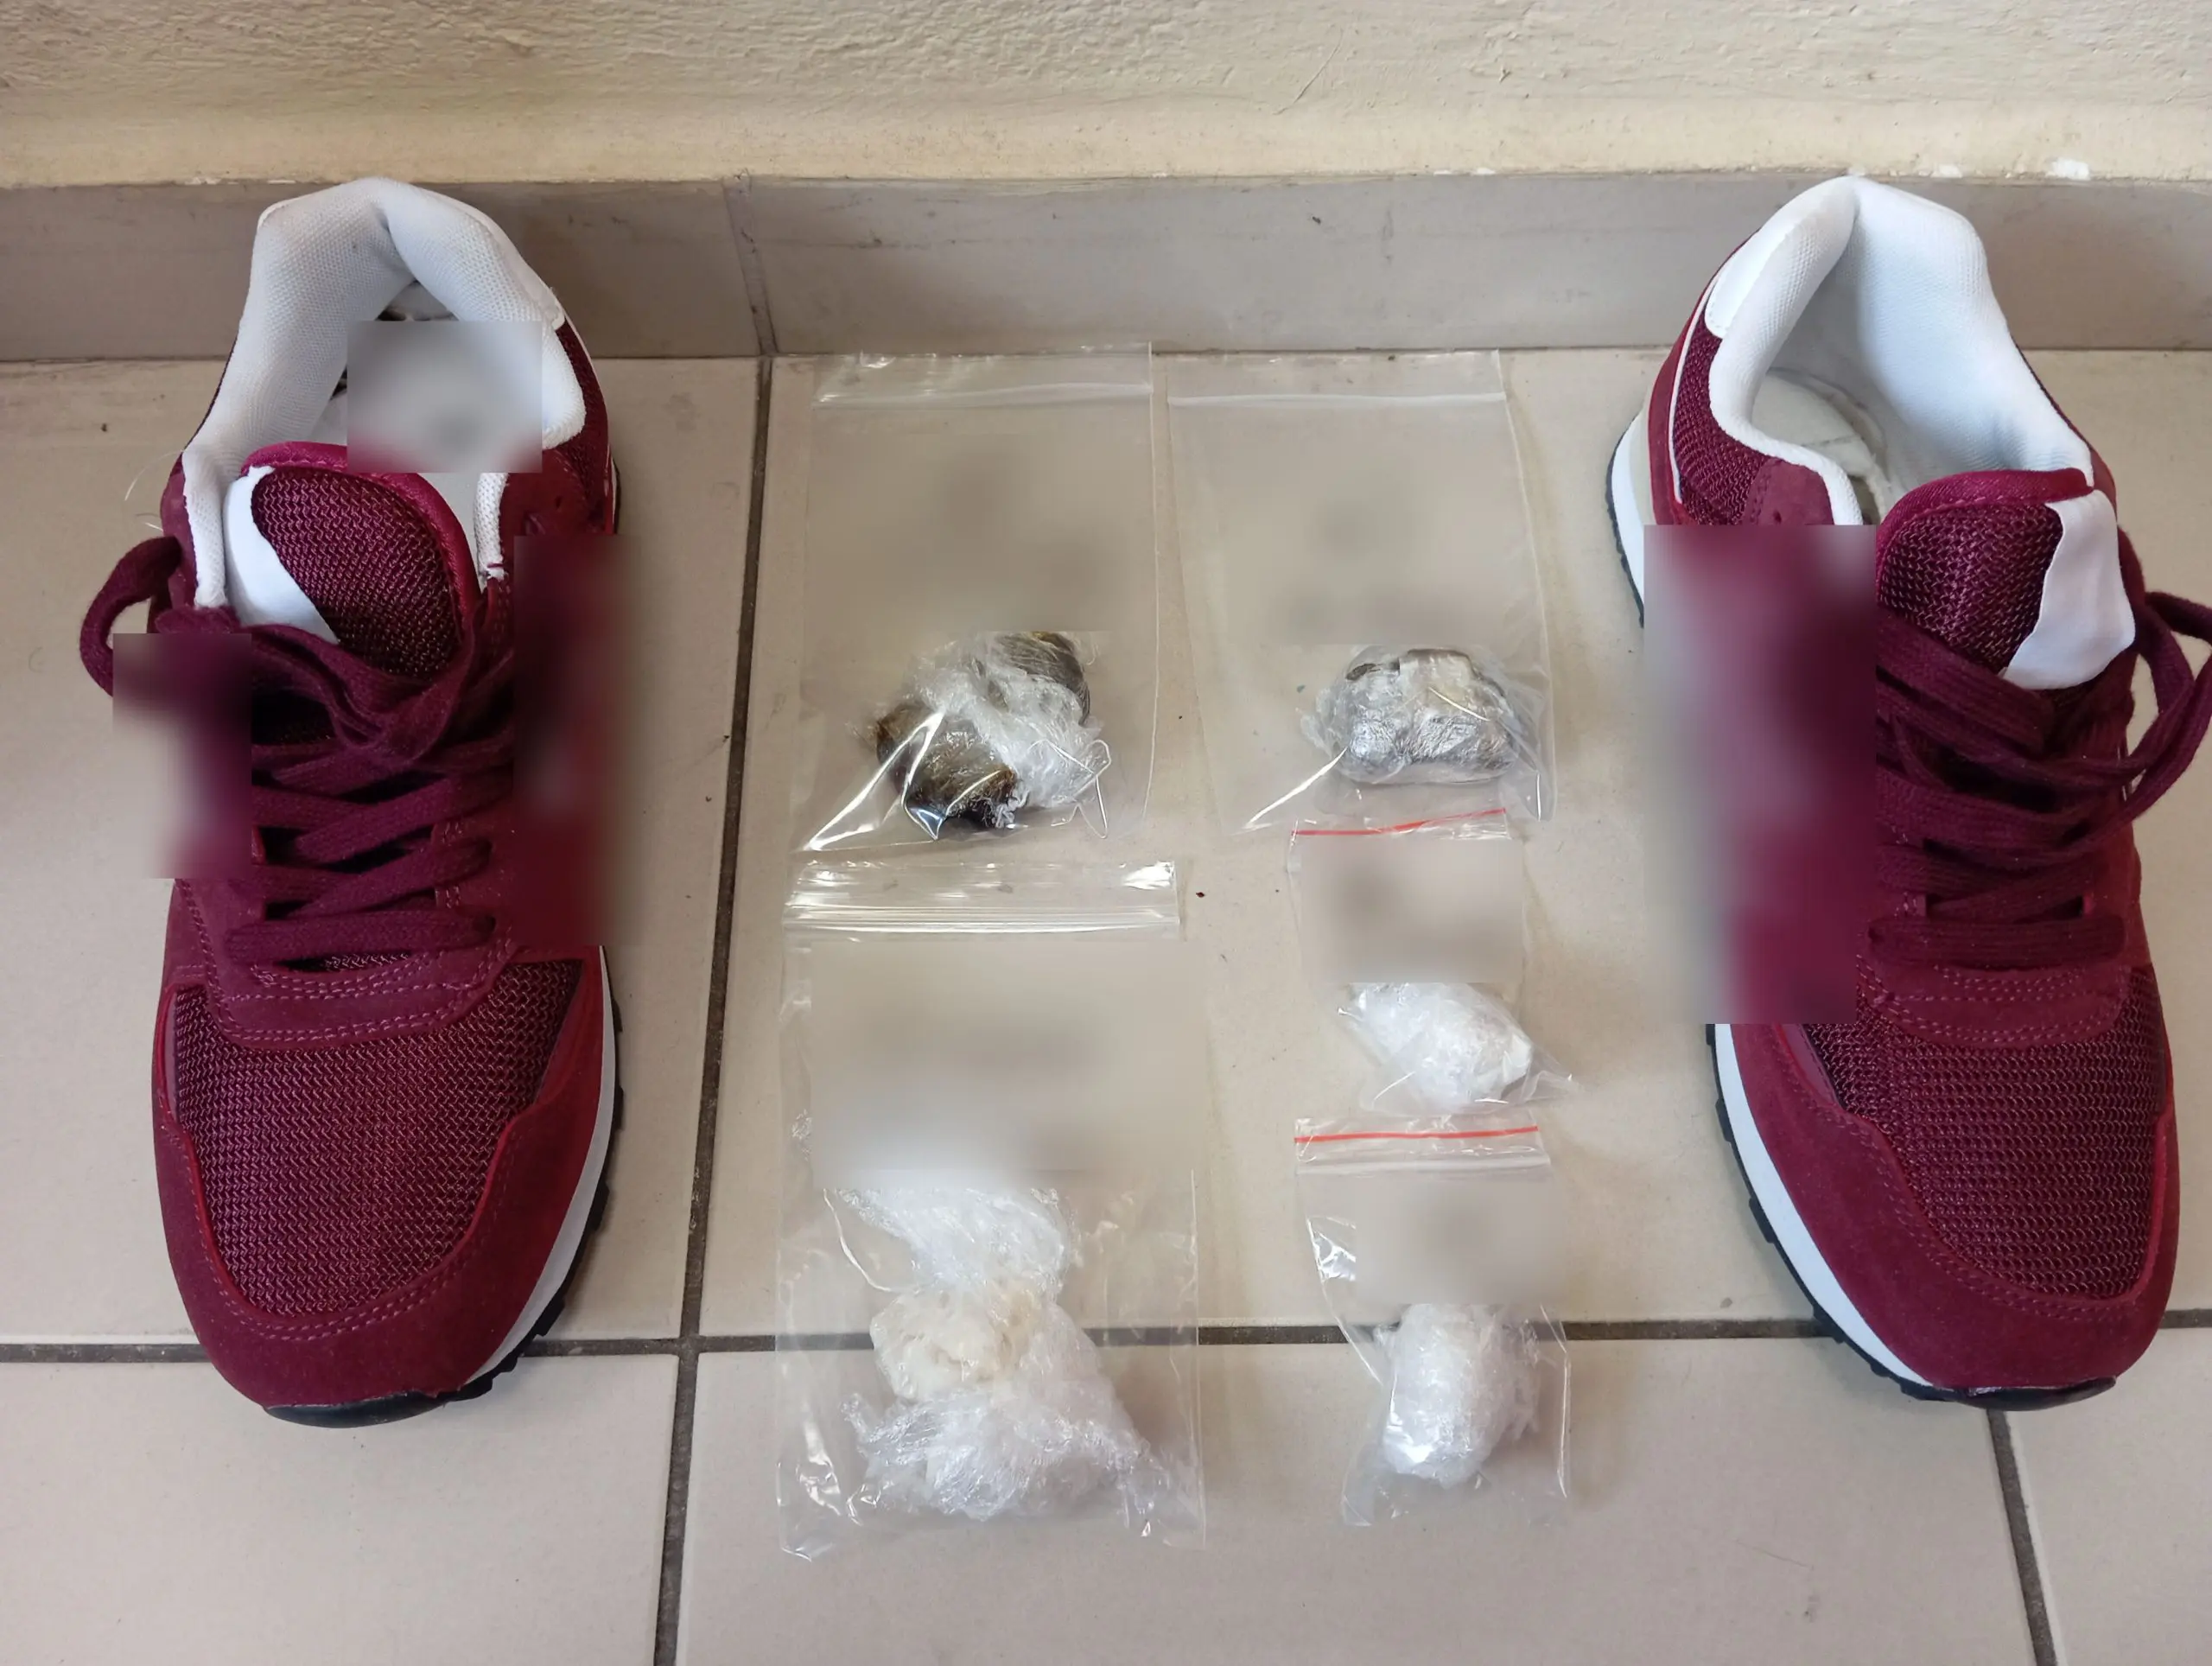 Τρίκαλα: Πήγε να δώσει ναρκωτικά κρυμμένα σε παπούτσια σε κρατούμενο φυλακών